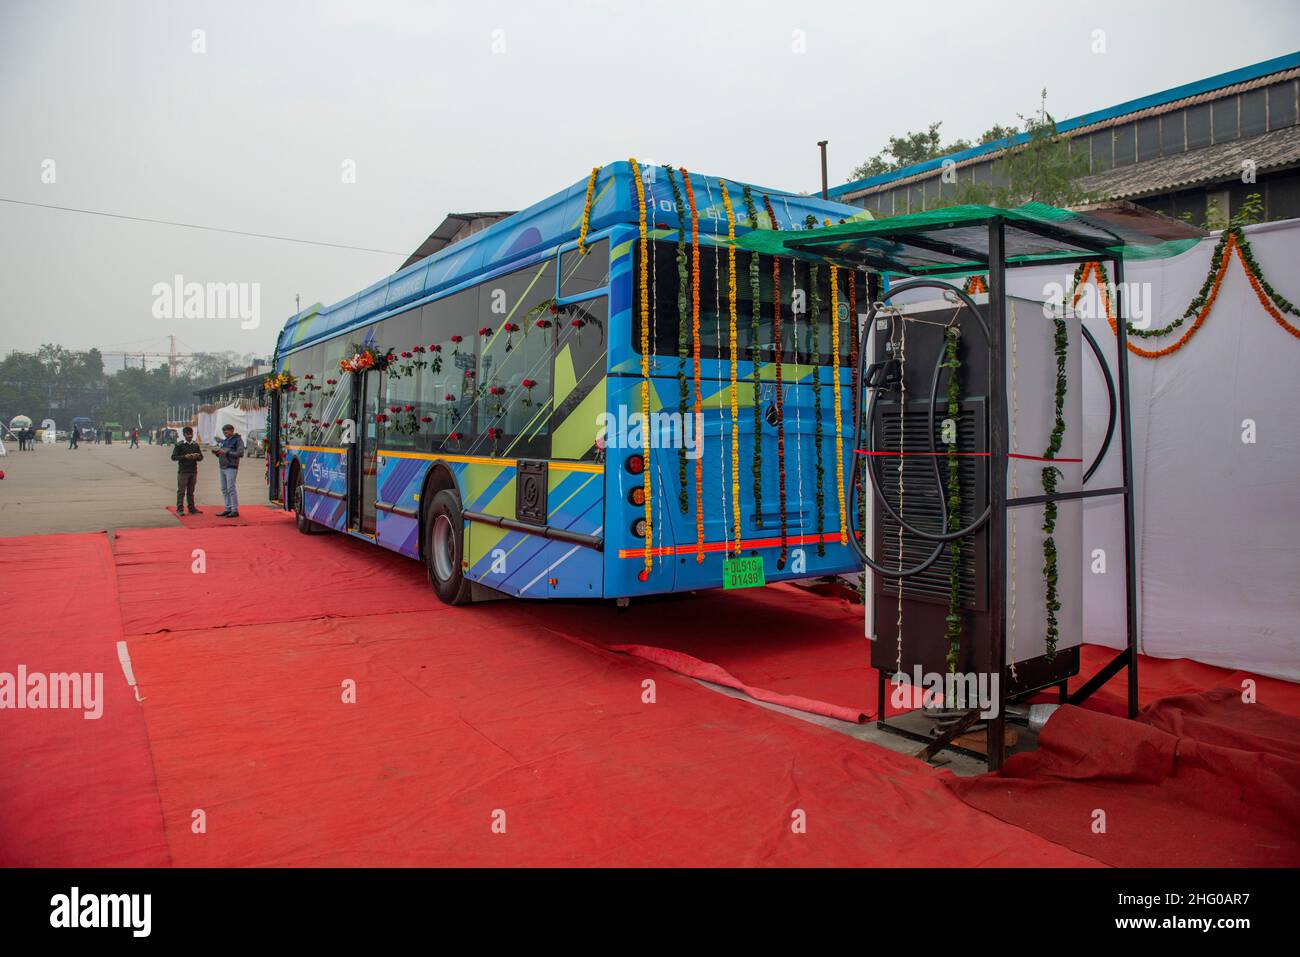 El primer autobús eléctrico visto decorado con flores cerca de una estación de carga en el IP Bus Depot New Delhi.Electric Bus servicio fue lanzado hoy por el Ministro Principal de Delhi Arvind Kejriwal en IP Bus Depot New Delhi. El prototipo del autobús eléctrico DTC (Delhi Transport Corporation) ha llegado al depósito de autobuses de Indraprastha. El ministro de transporte, Kailash Gahlot, dijo que 50 autobuses eléctricos más estarán disponibles en febrero de este año. Los e-buses se añadirán en lotes de unos 50 cada mes, que han sido fabricados por JBM Auto Limited. (Foto de Pradeep Gaur/SOPA Images/Sipa USA) Foto de stock